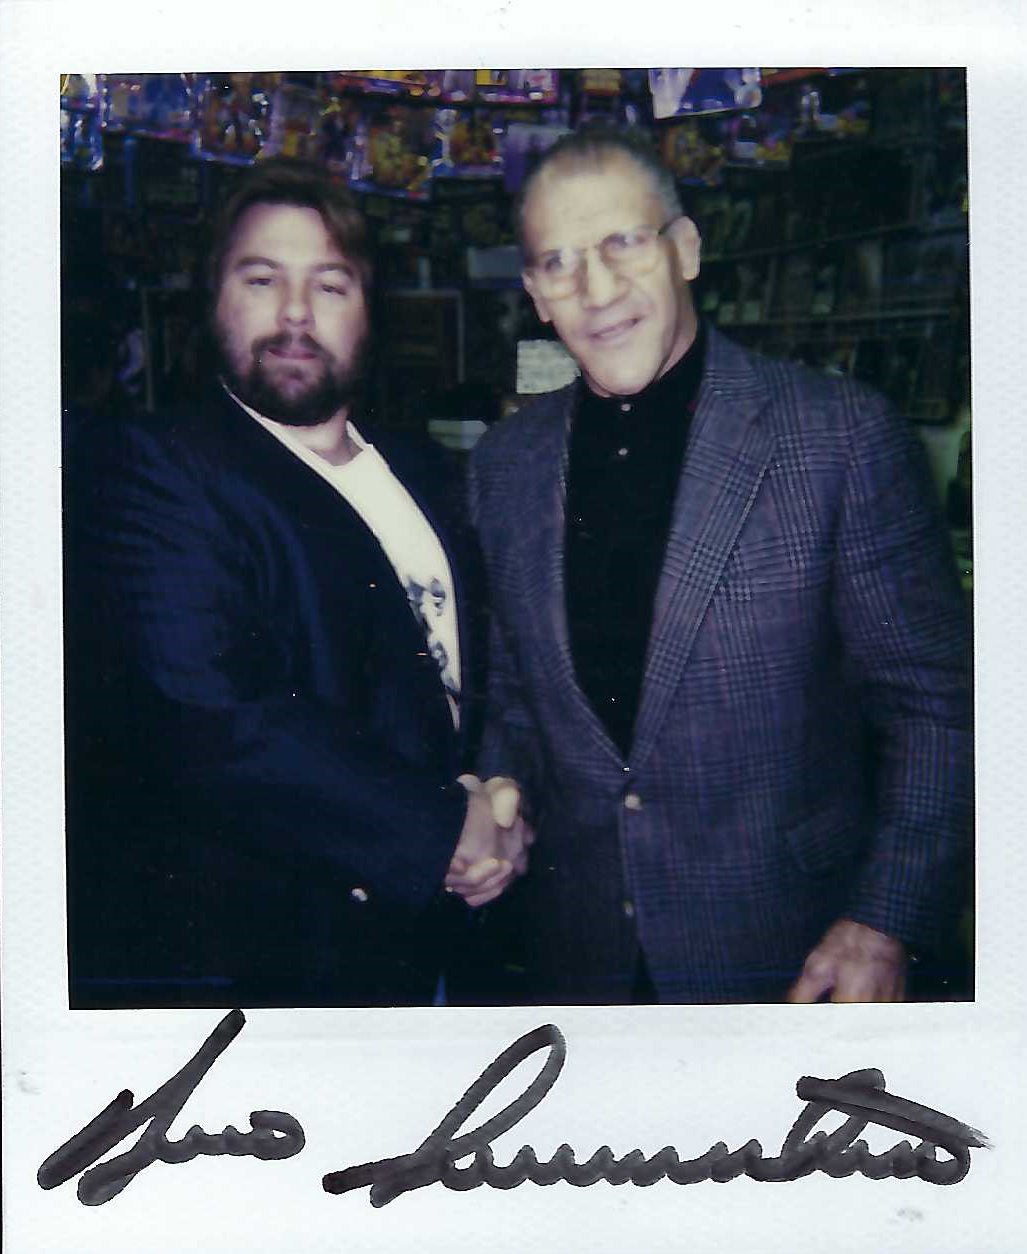 AM397  Bruno Sammartino ( Deceased ) Superstar Billy Graham  Bob Backlund  Autographed vintage Wrestling Magazine w/COA